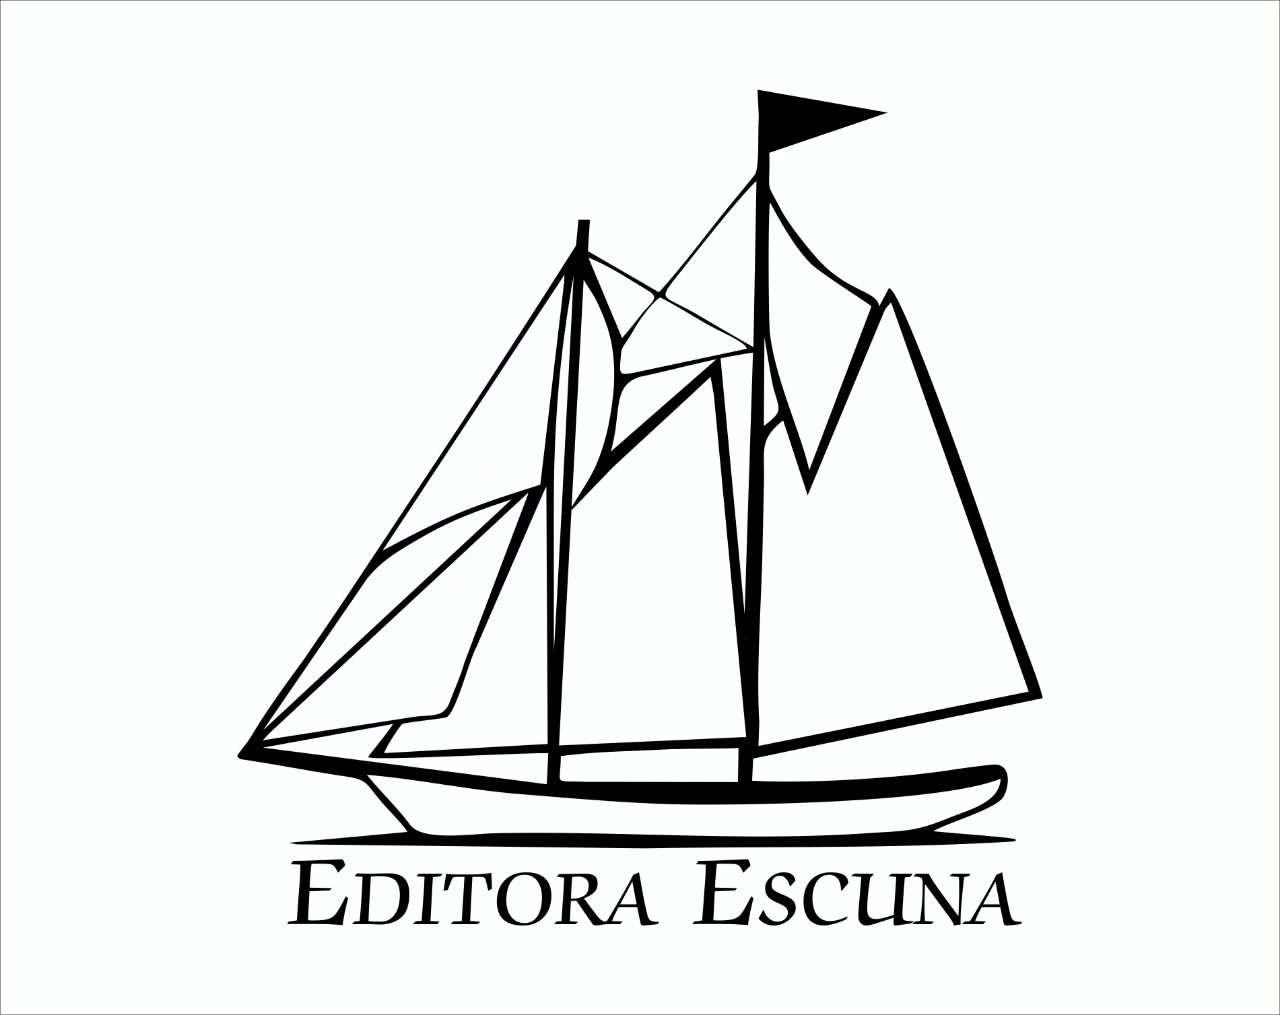 Editora Escuna